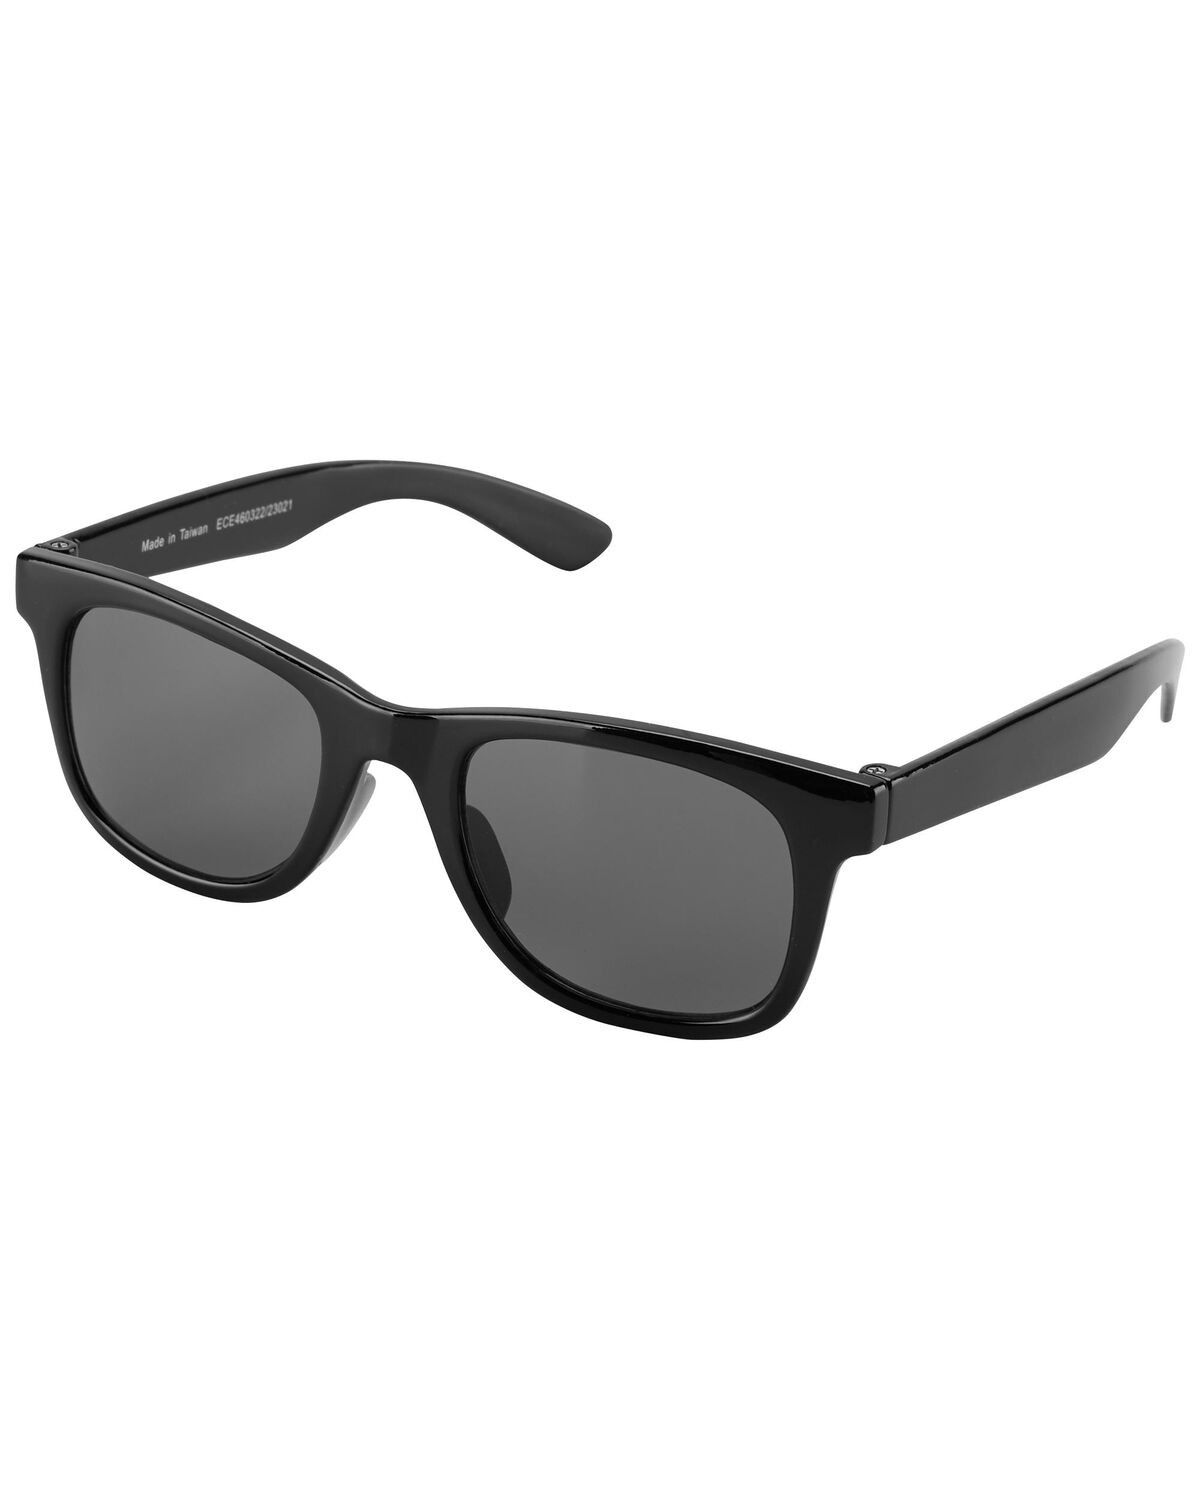 Black Classic Sunglasses | carters.com | Carter's